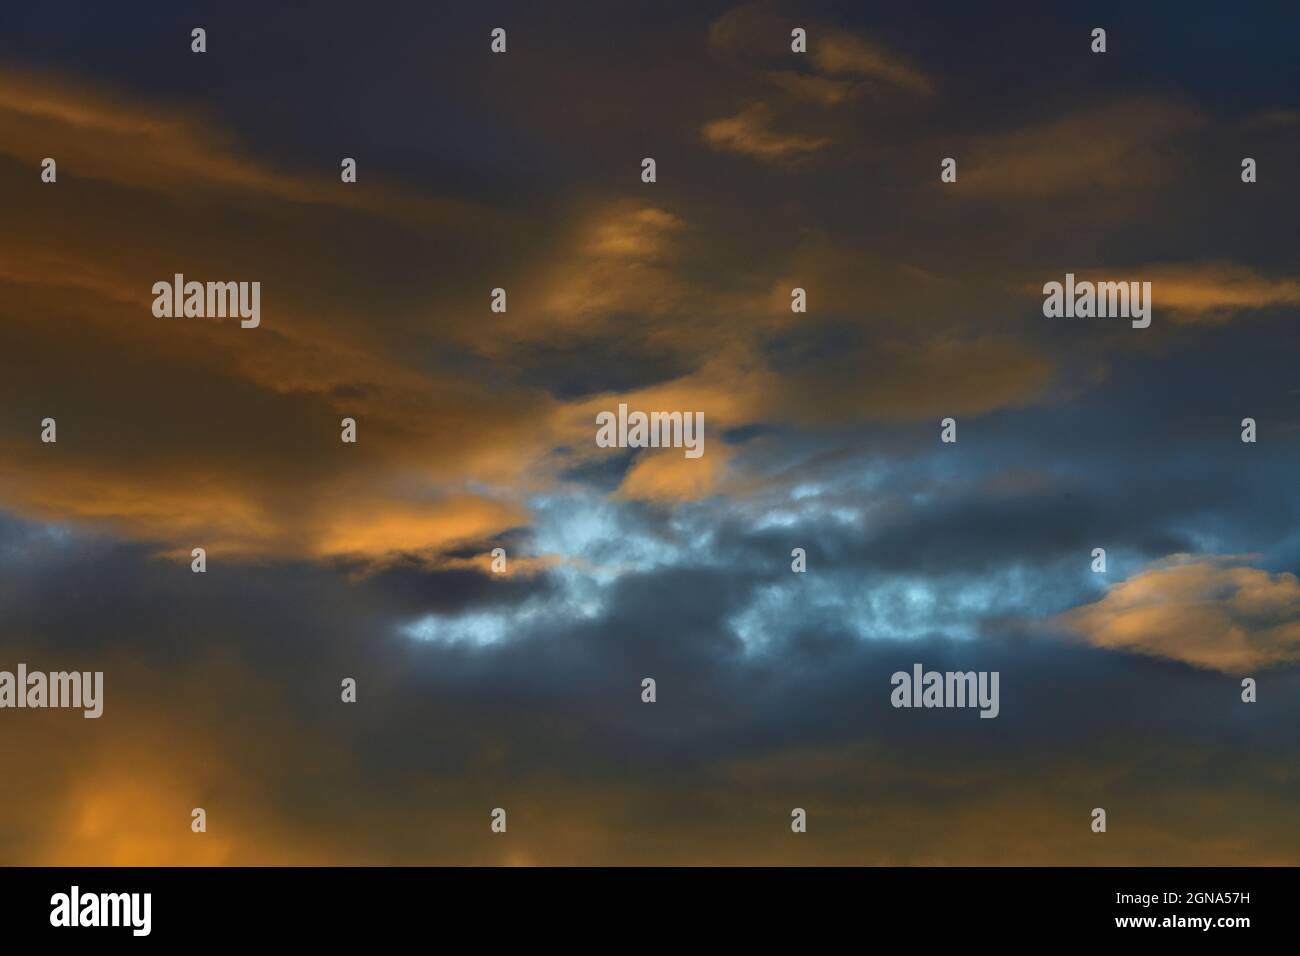 Un'immagine paesaggistica della splendida nuvola che riflette la luce del sole che tramonta nell'Alberta Canada occidentale. Foto Stock